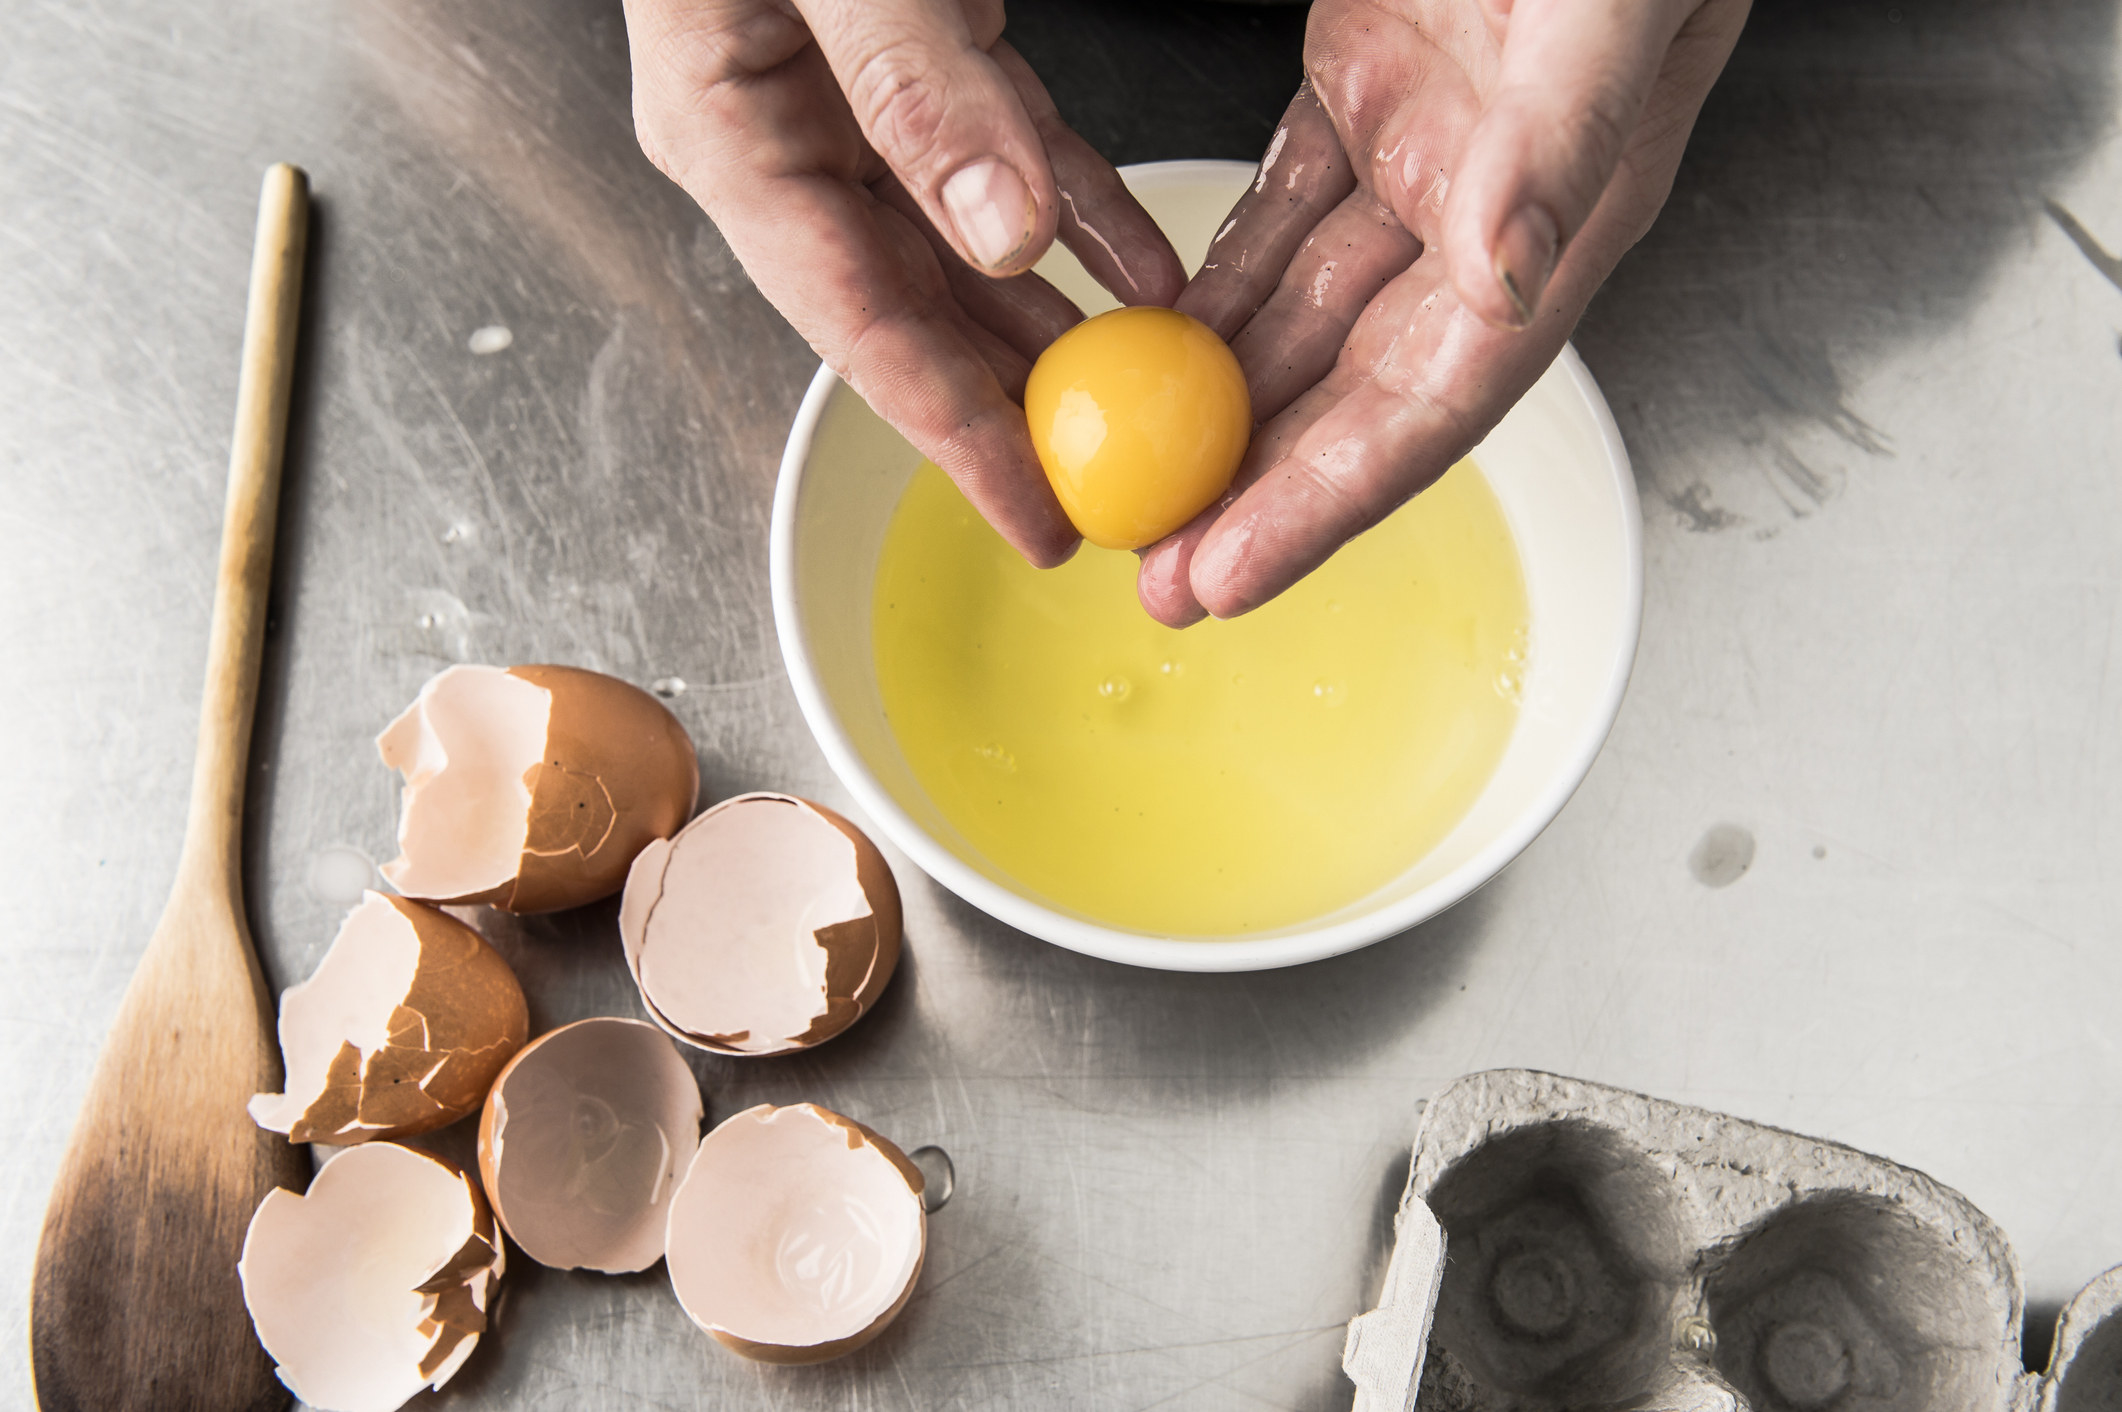 Hands holding an egg yolk over a bowl of beaten eggs.